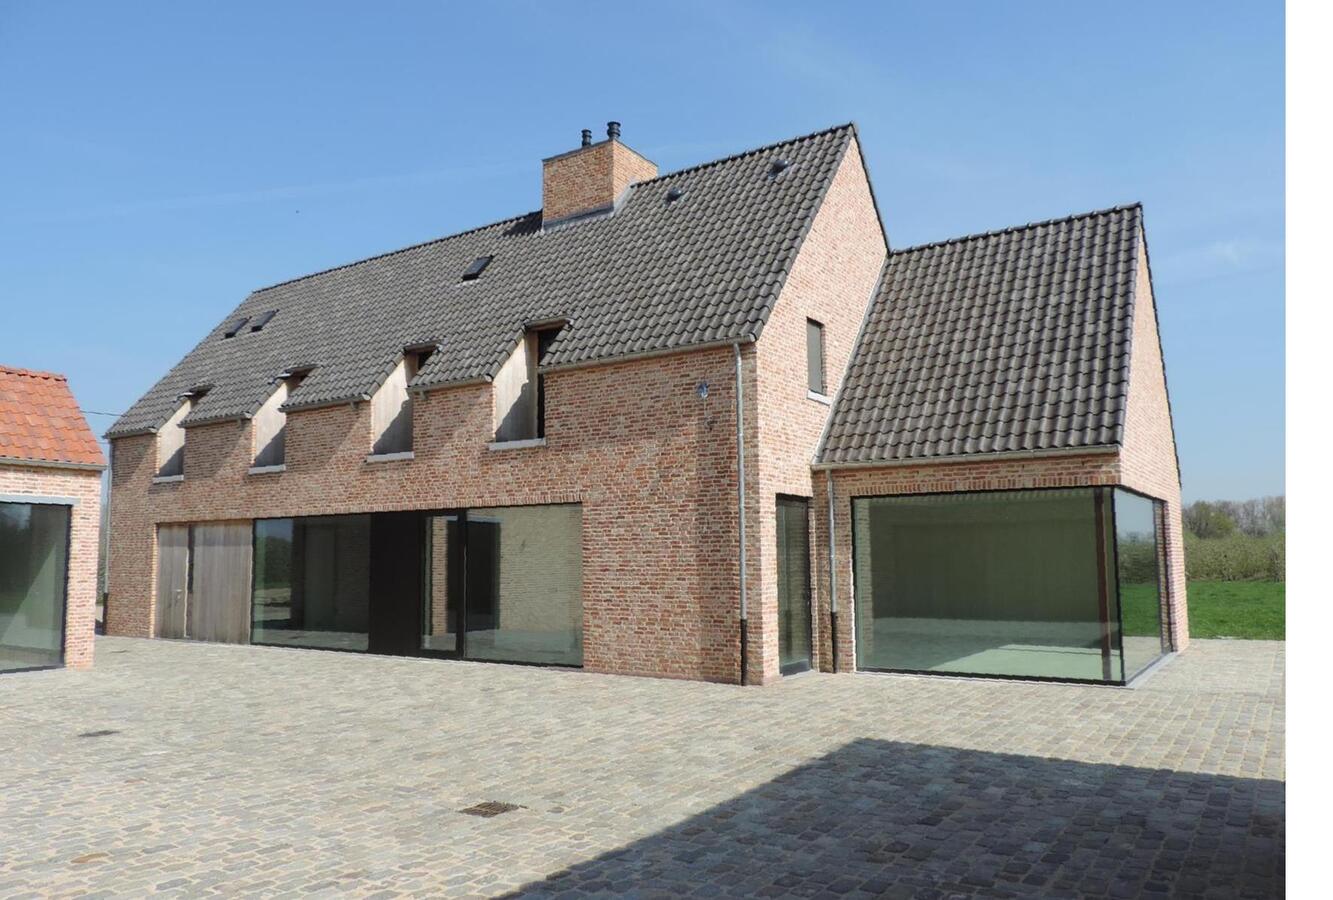 Property sold in Herk-de-Stad